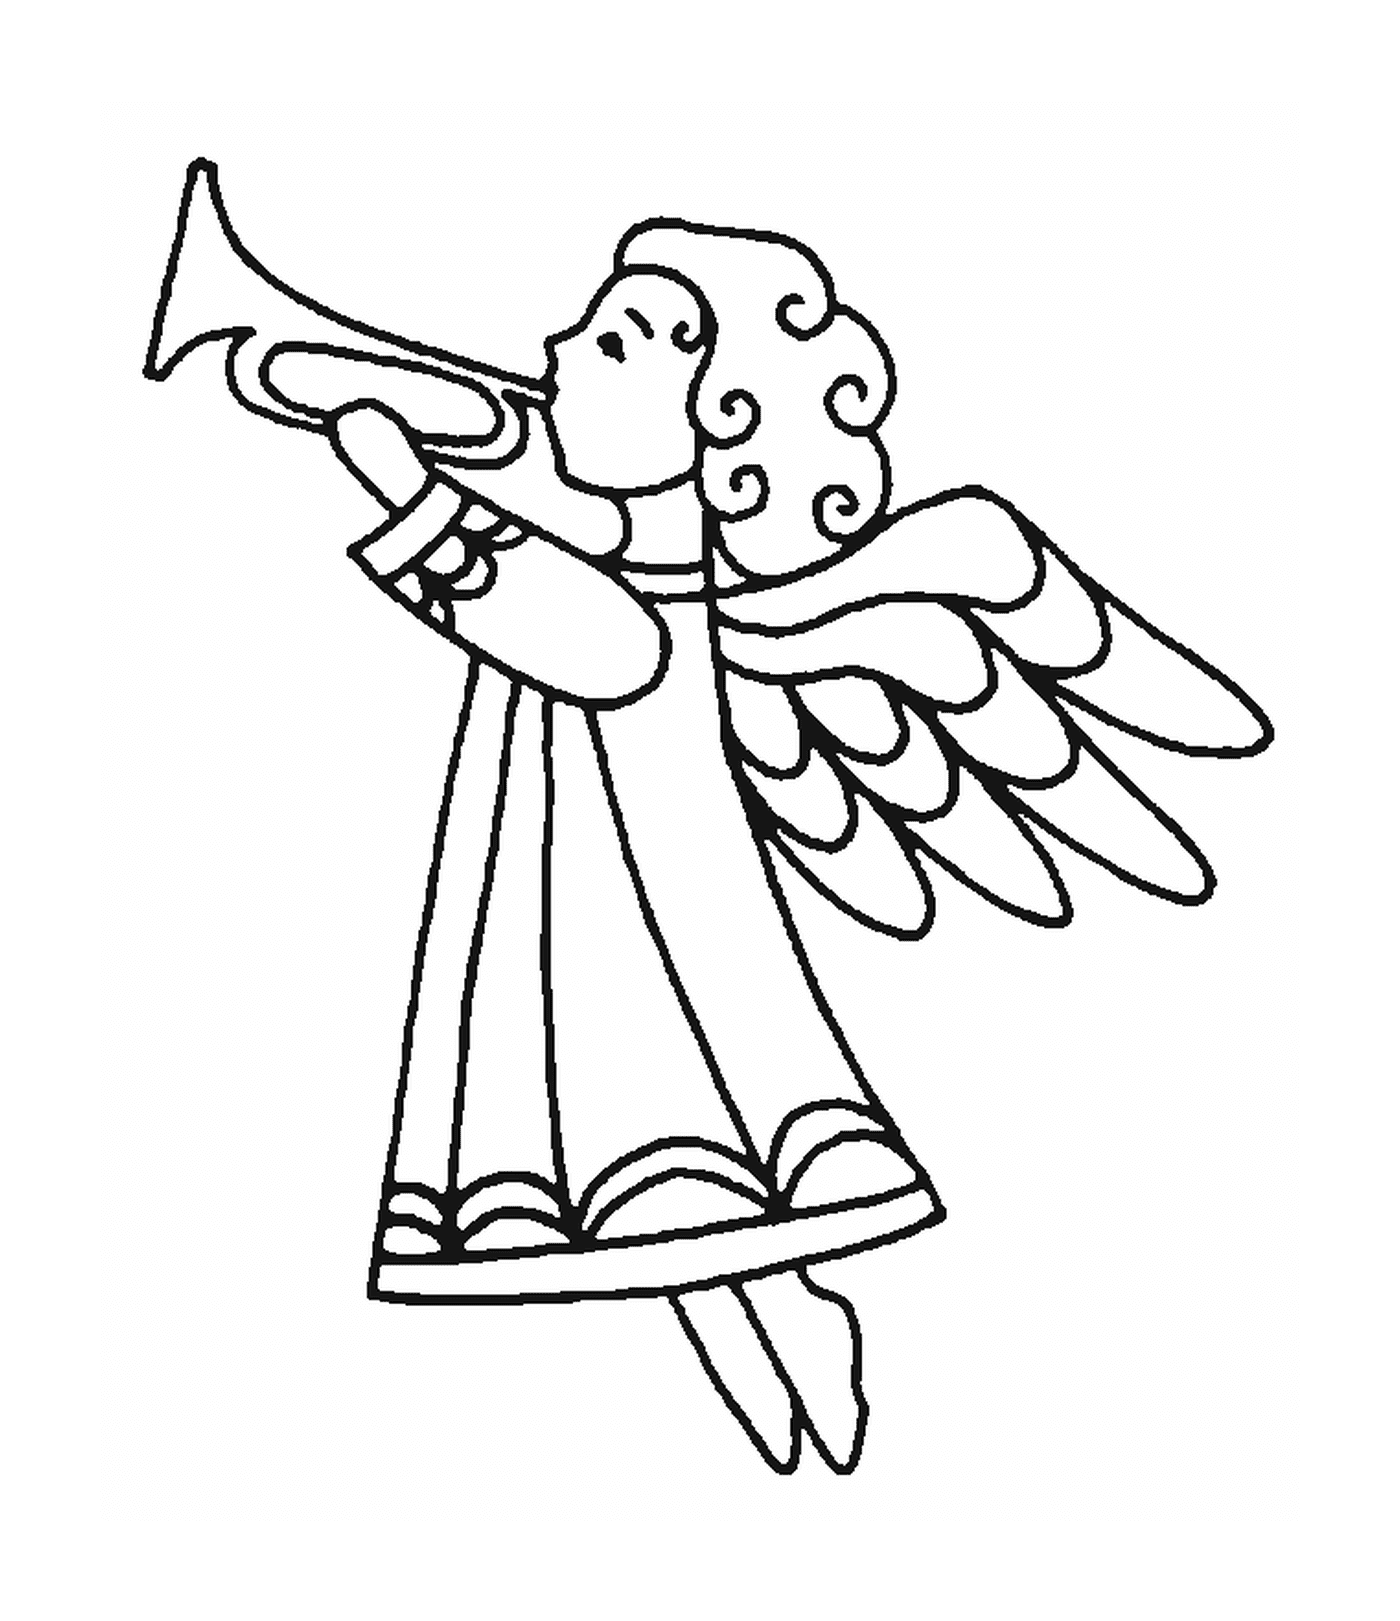   Un ange jouant de la trompette 